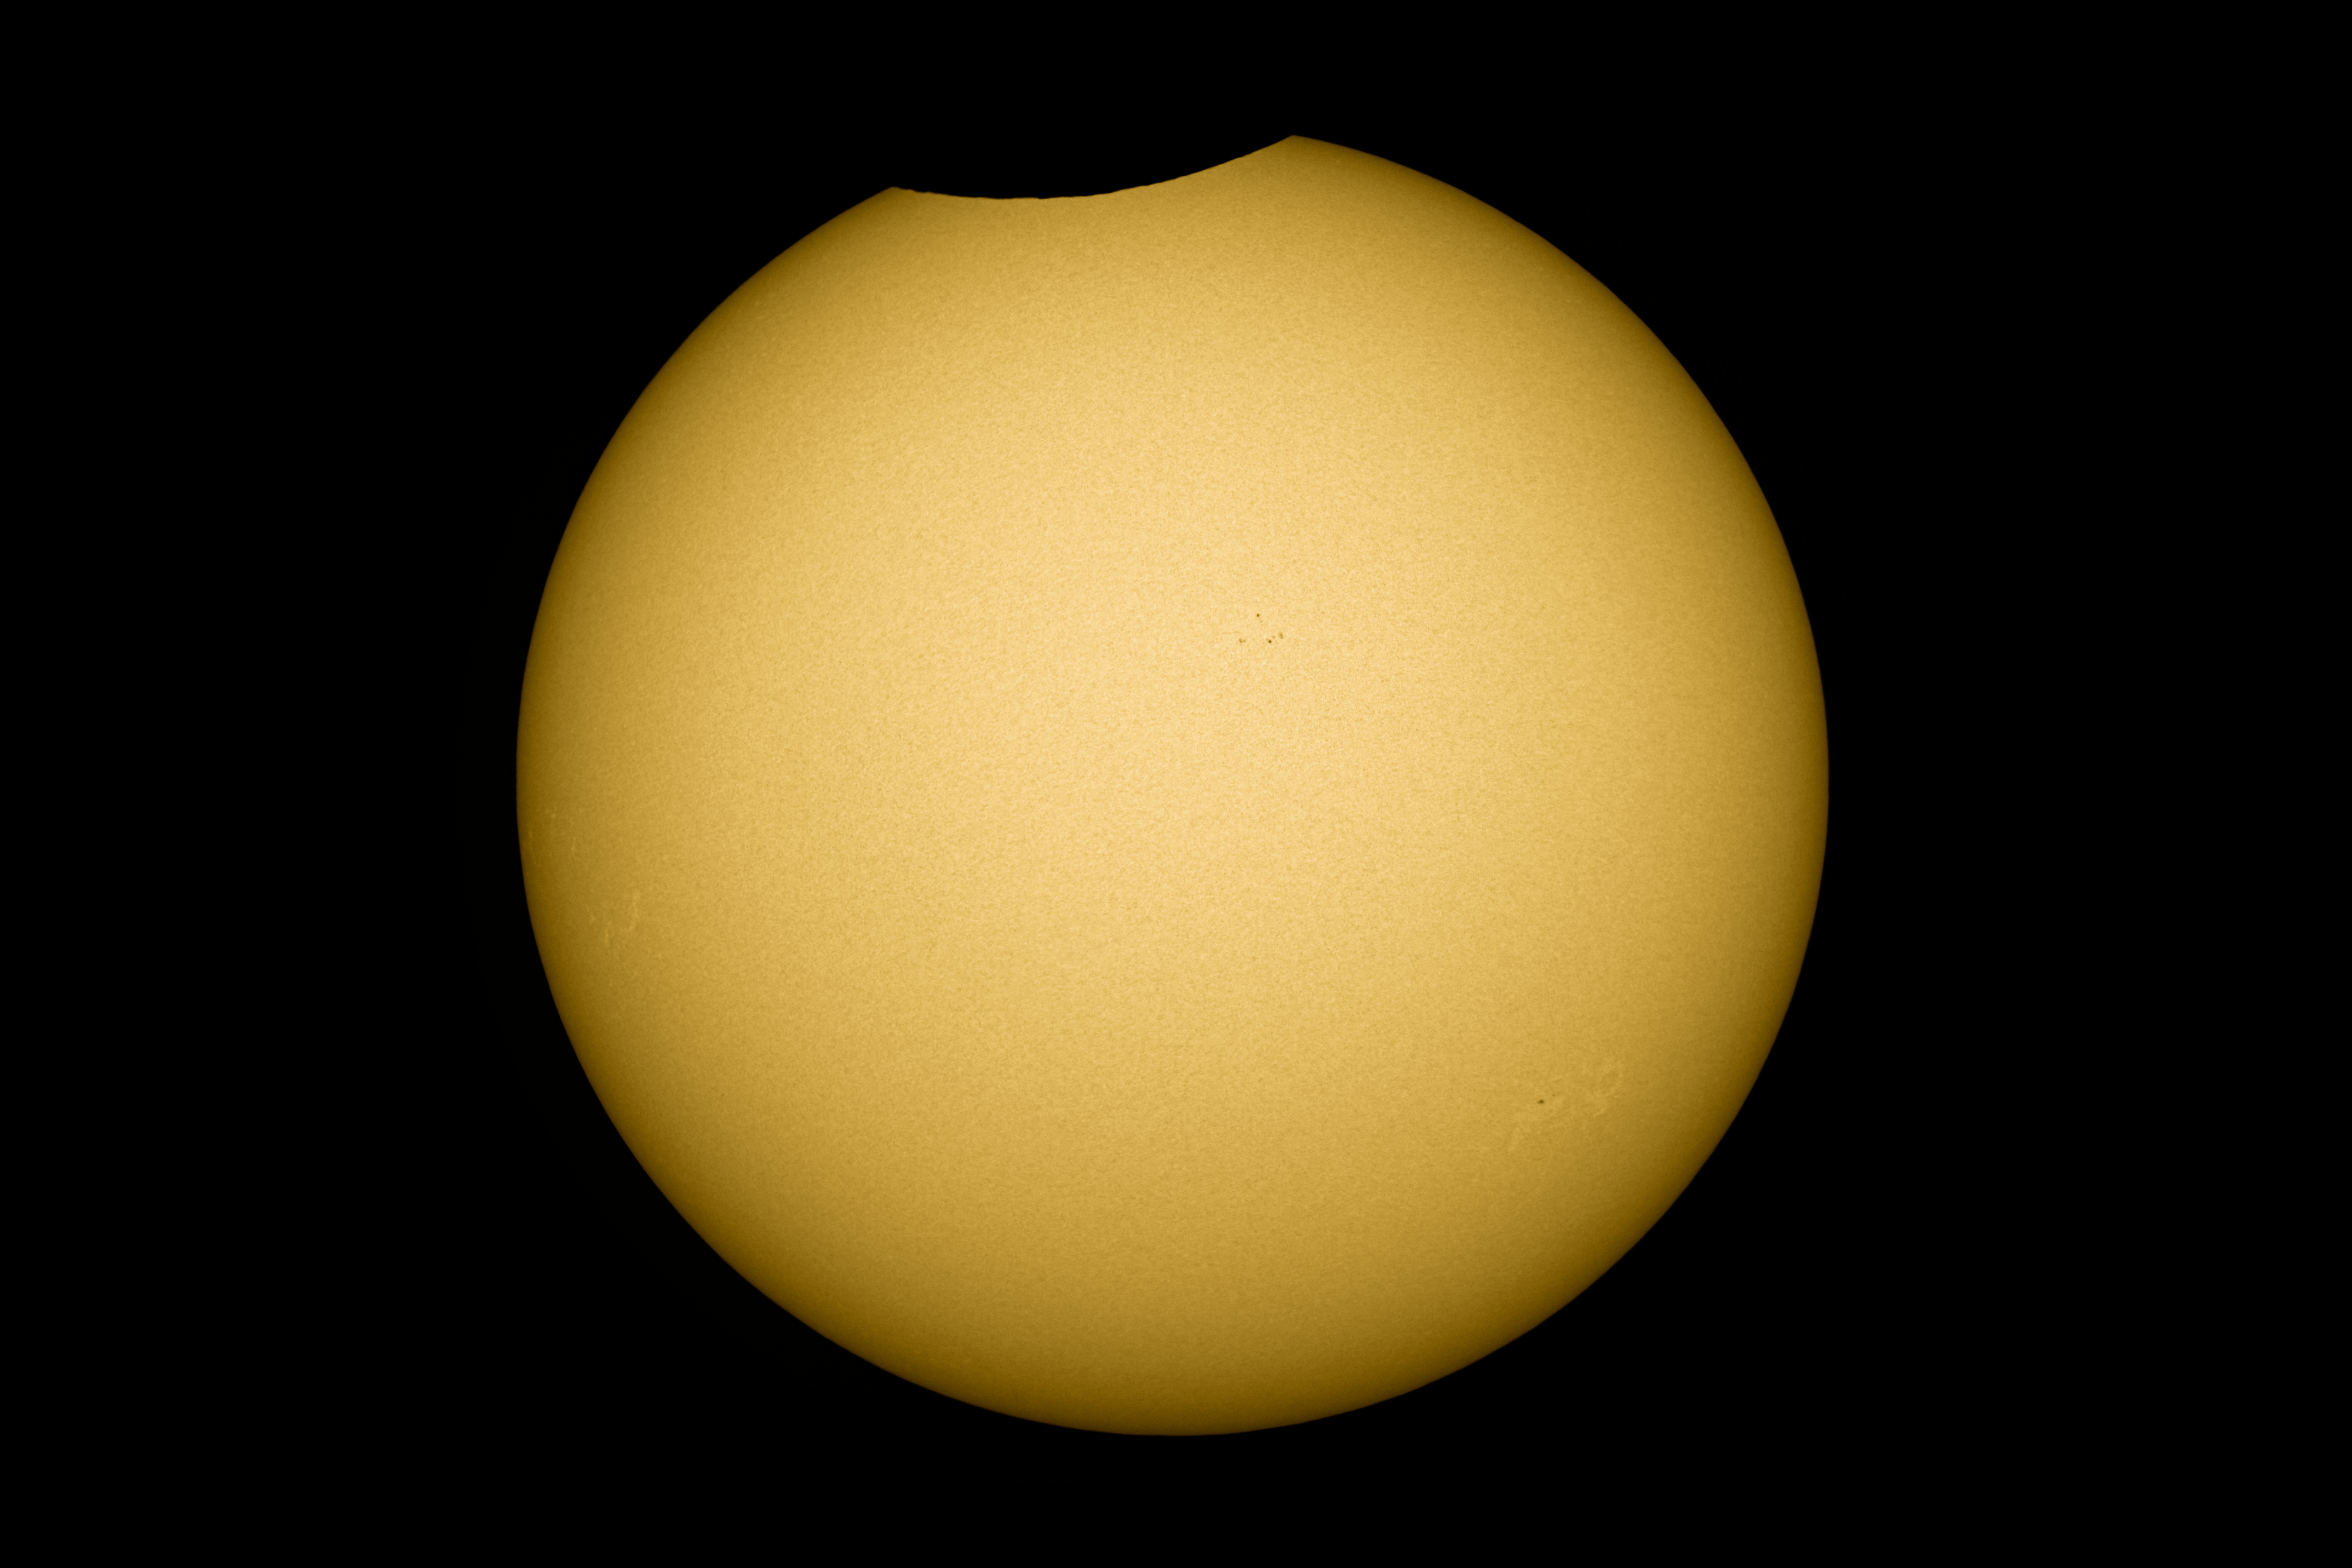 Éclipse partielle de Soleil au LX90 F6,3